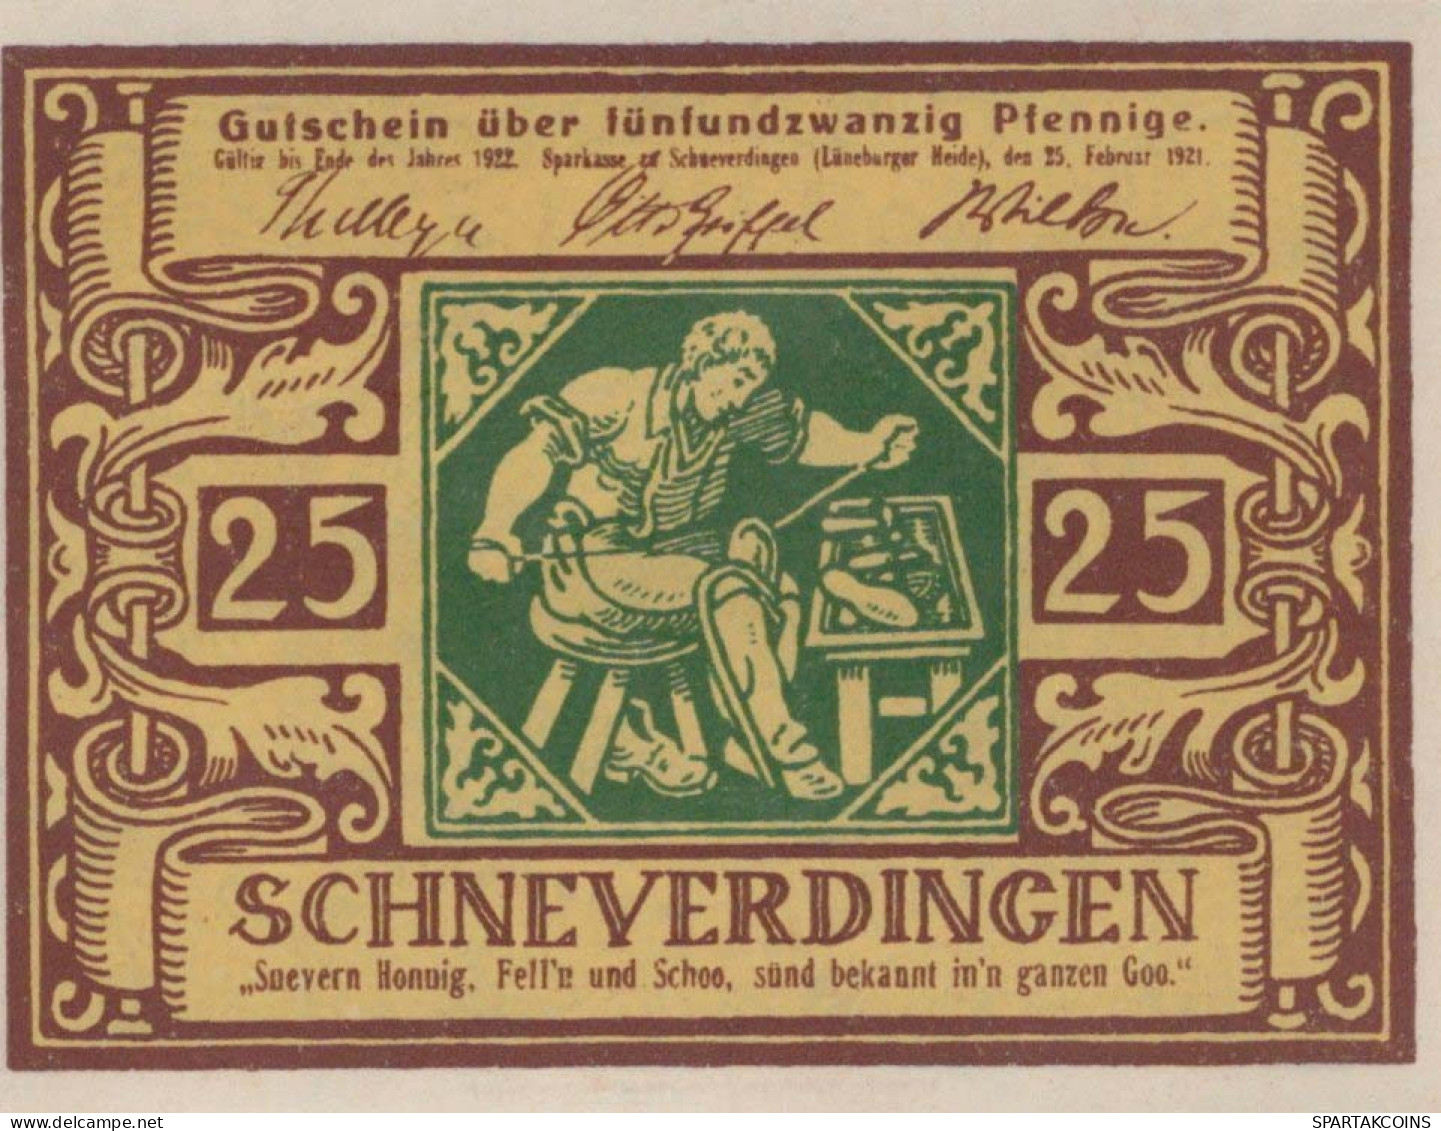 25 PFENNIG 1921 Stadt SCHNEVERDINGEN Hanover UNC DEUTSCHLAND Notgeld #PH959 - Lokale Ausgaben